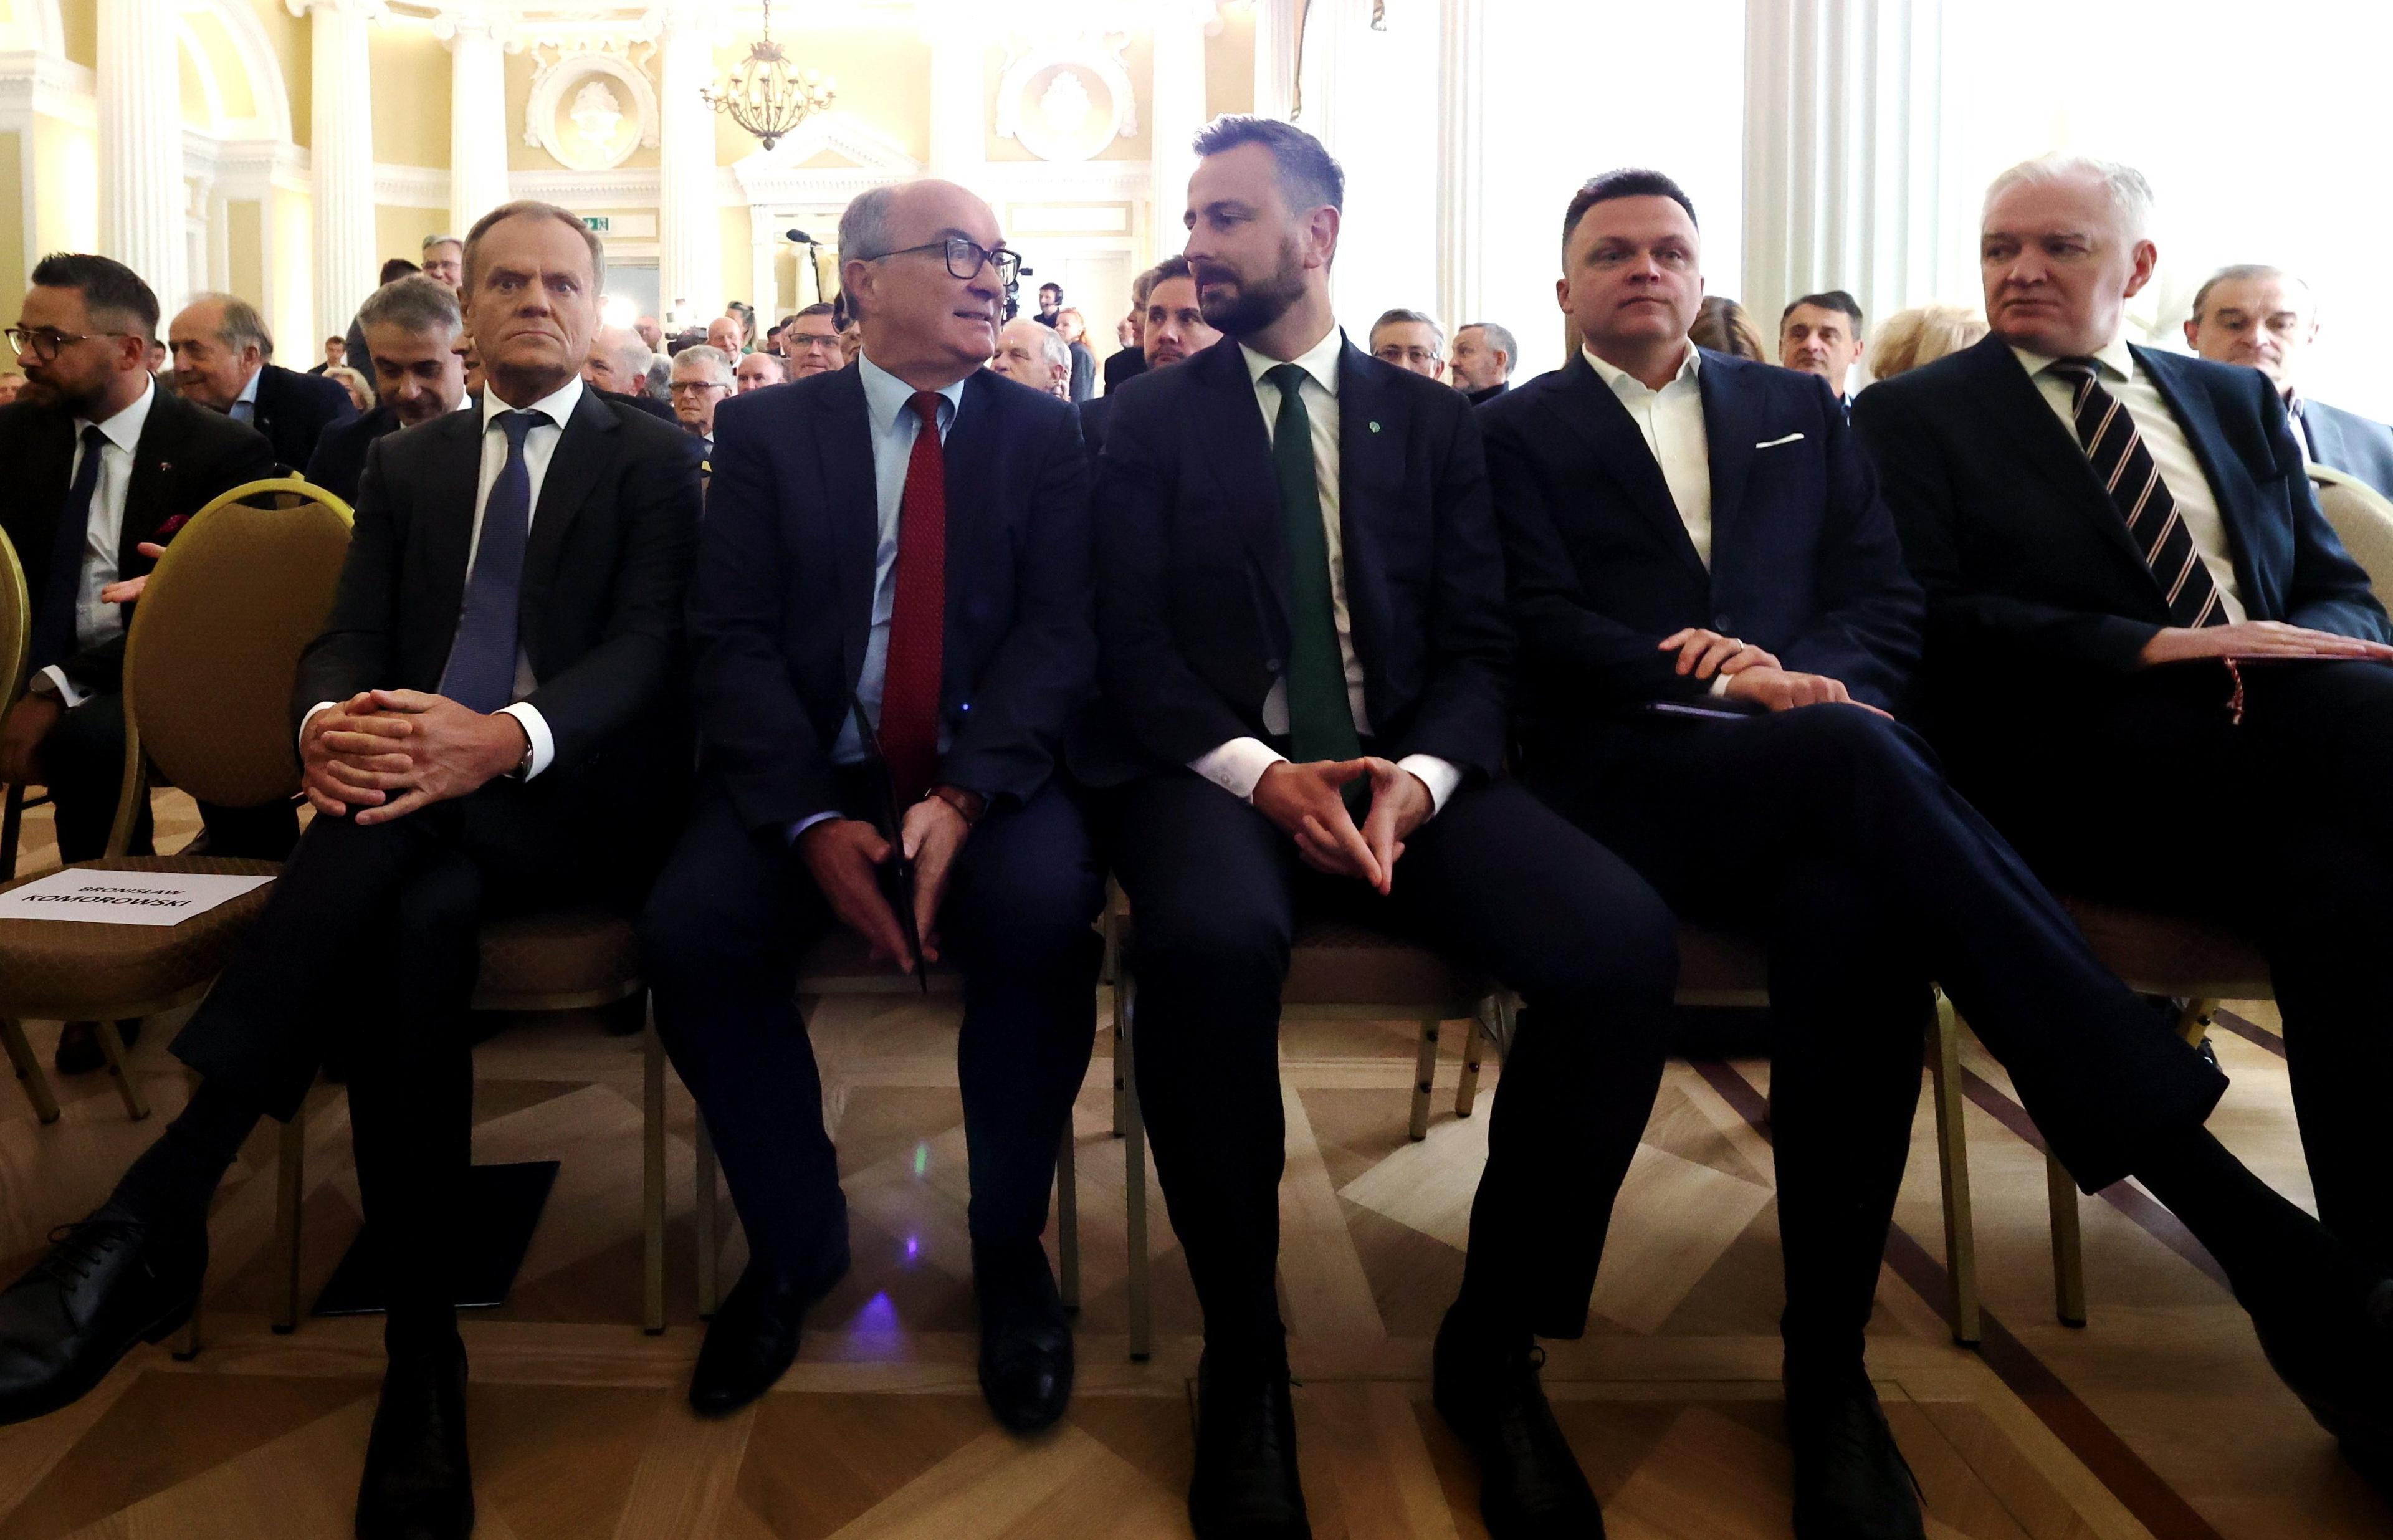 Liderzy opozycji - Donald Tusk, Włodzimierz Czarzasty, Władysław Kosiniak-Kamysz, Szymon Hołownia, ubrani w garnitury, siedzą w rzędzie na krzesłach w dużej sali